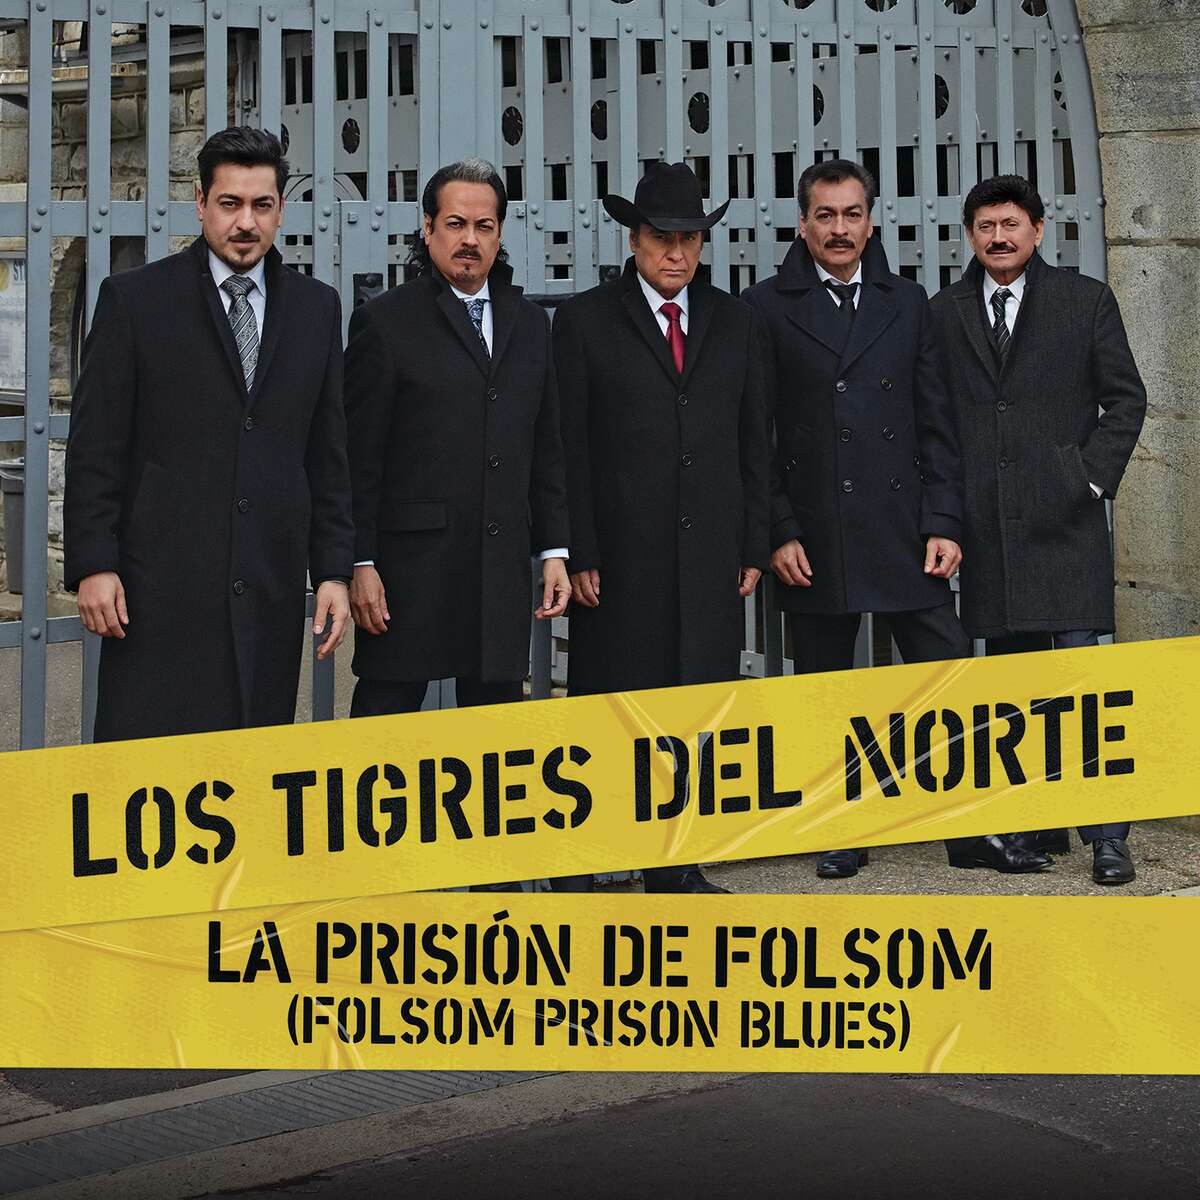 Los Tigres del Norte follow in the footsteps of Johnny Cash at Folsom Prison.